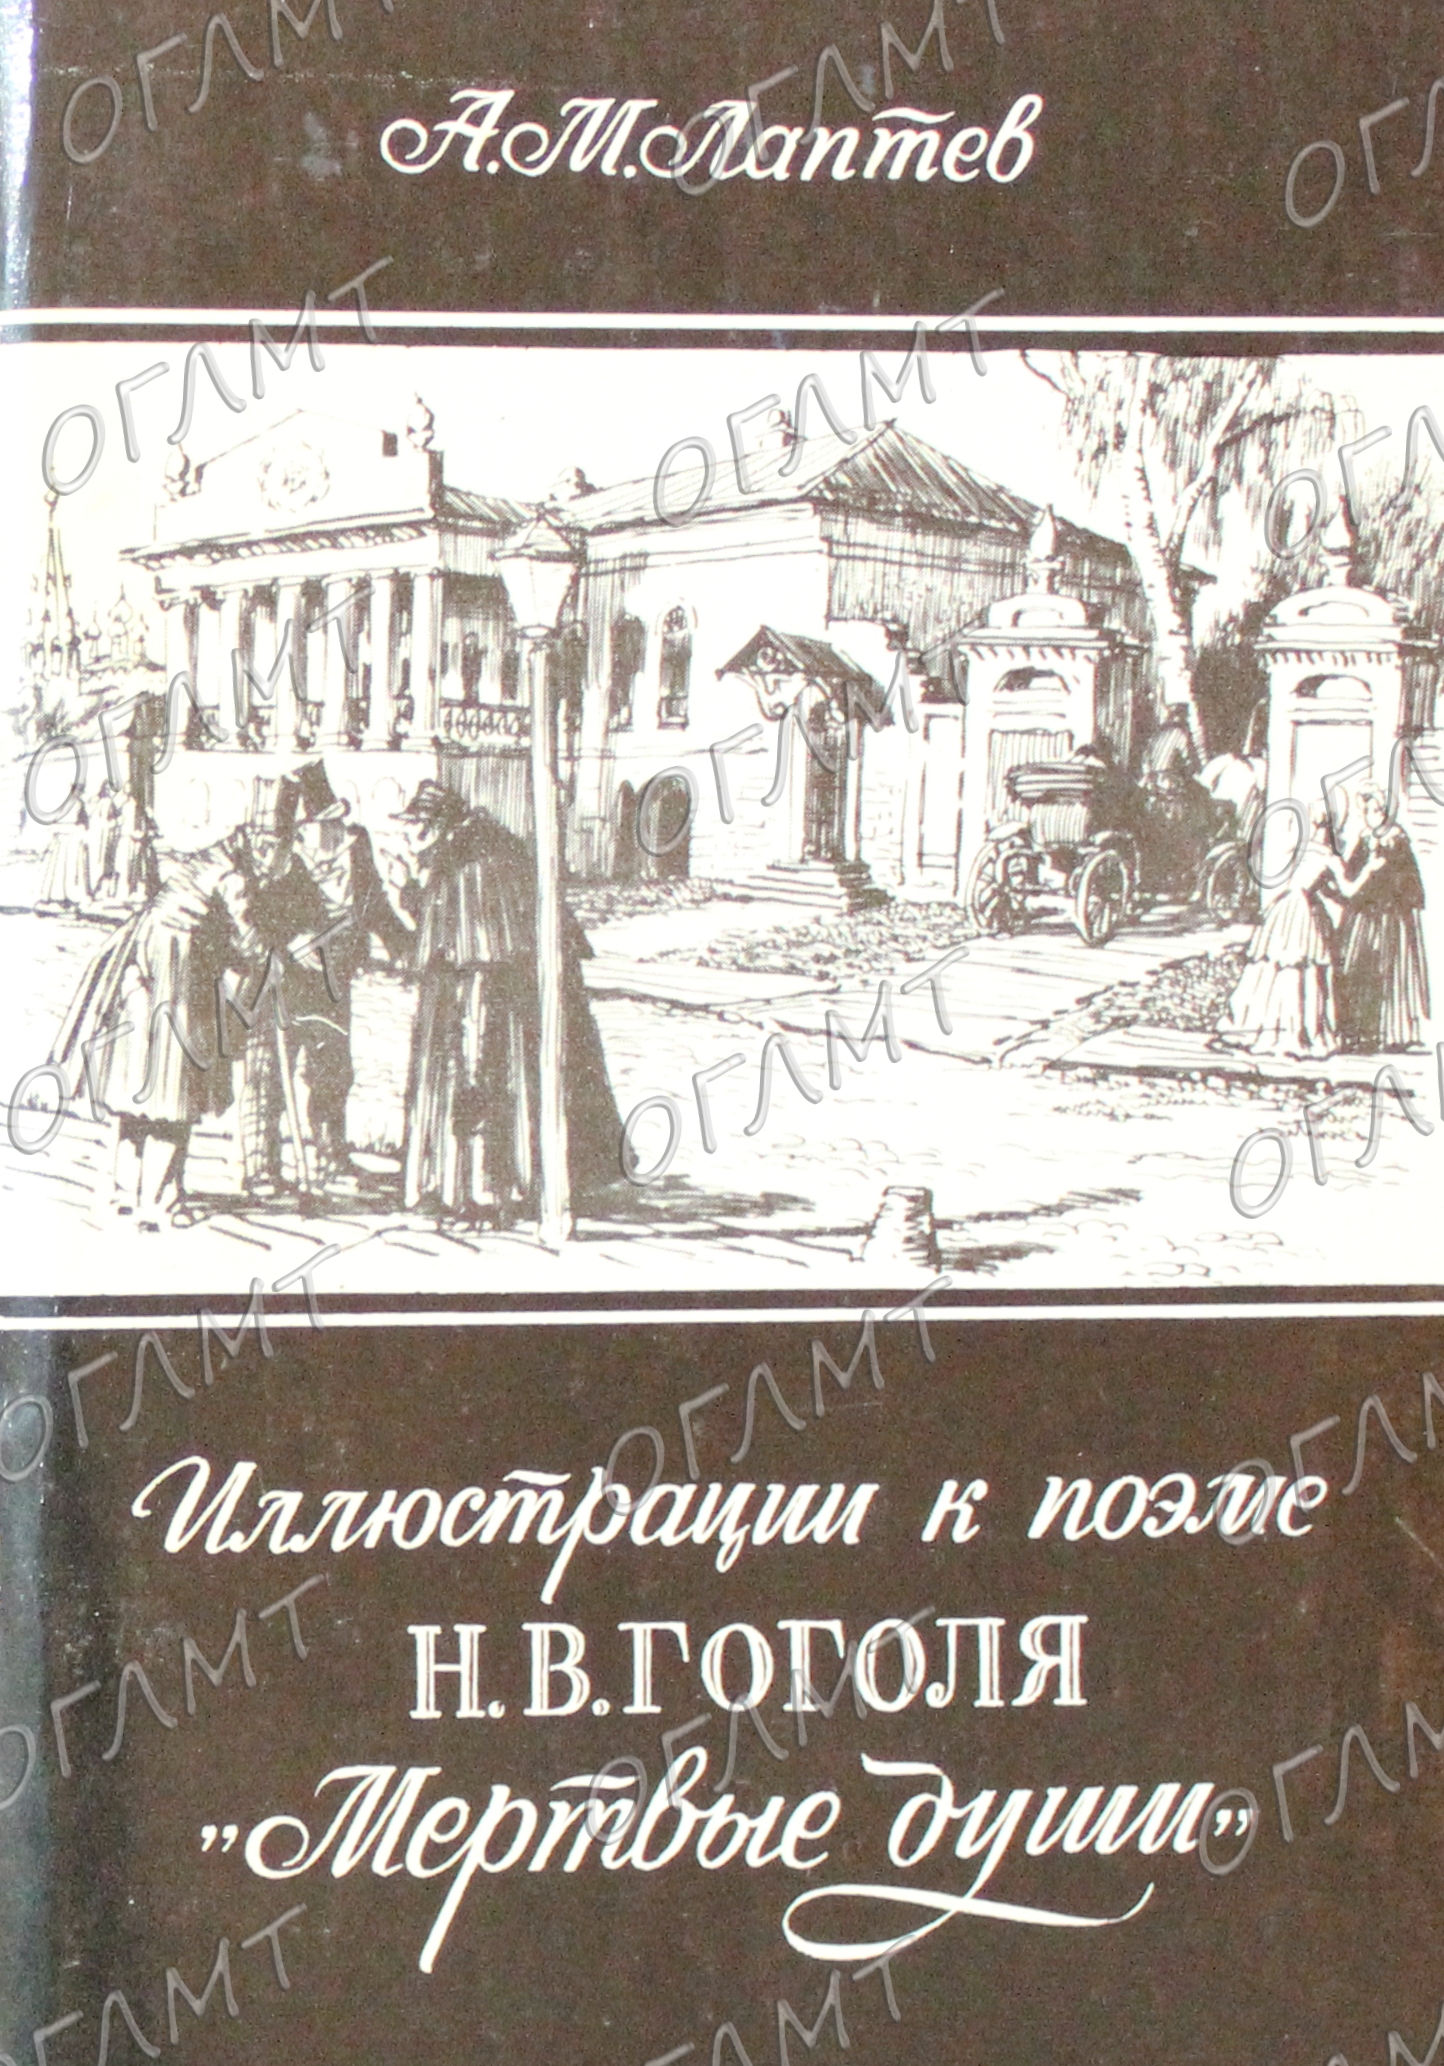 Виртуальная выставка «Иллюстрации к поэме Н.В. Гоголя "Мёртвые души"»